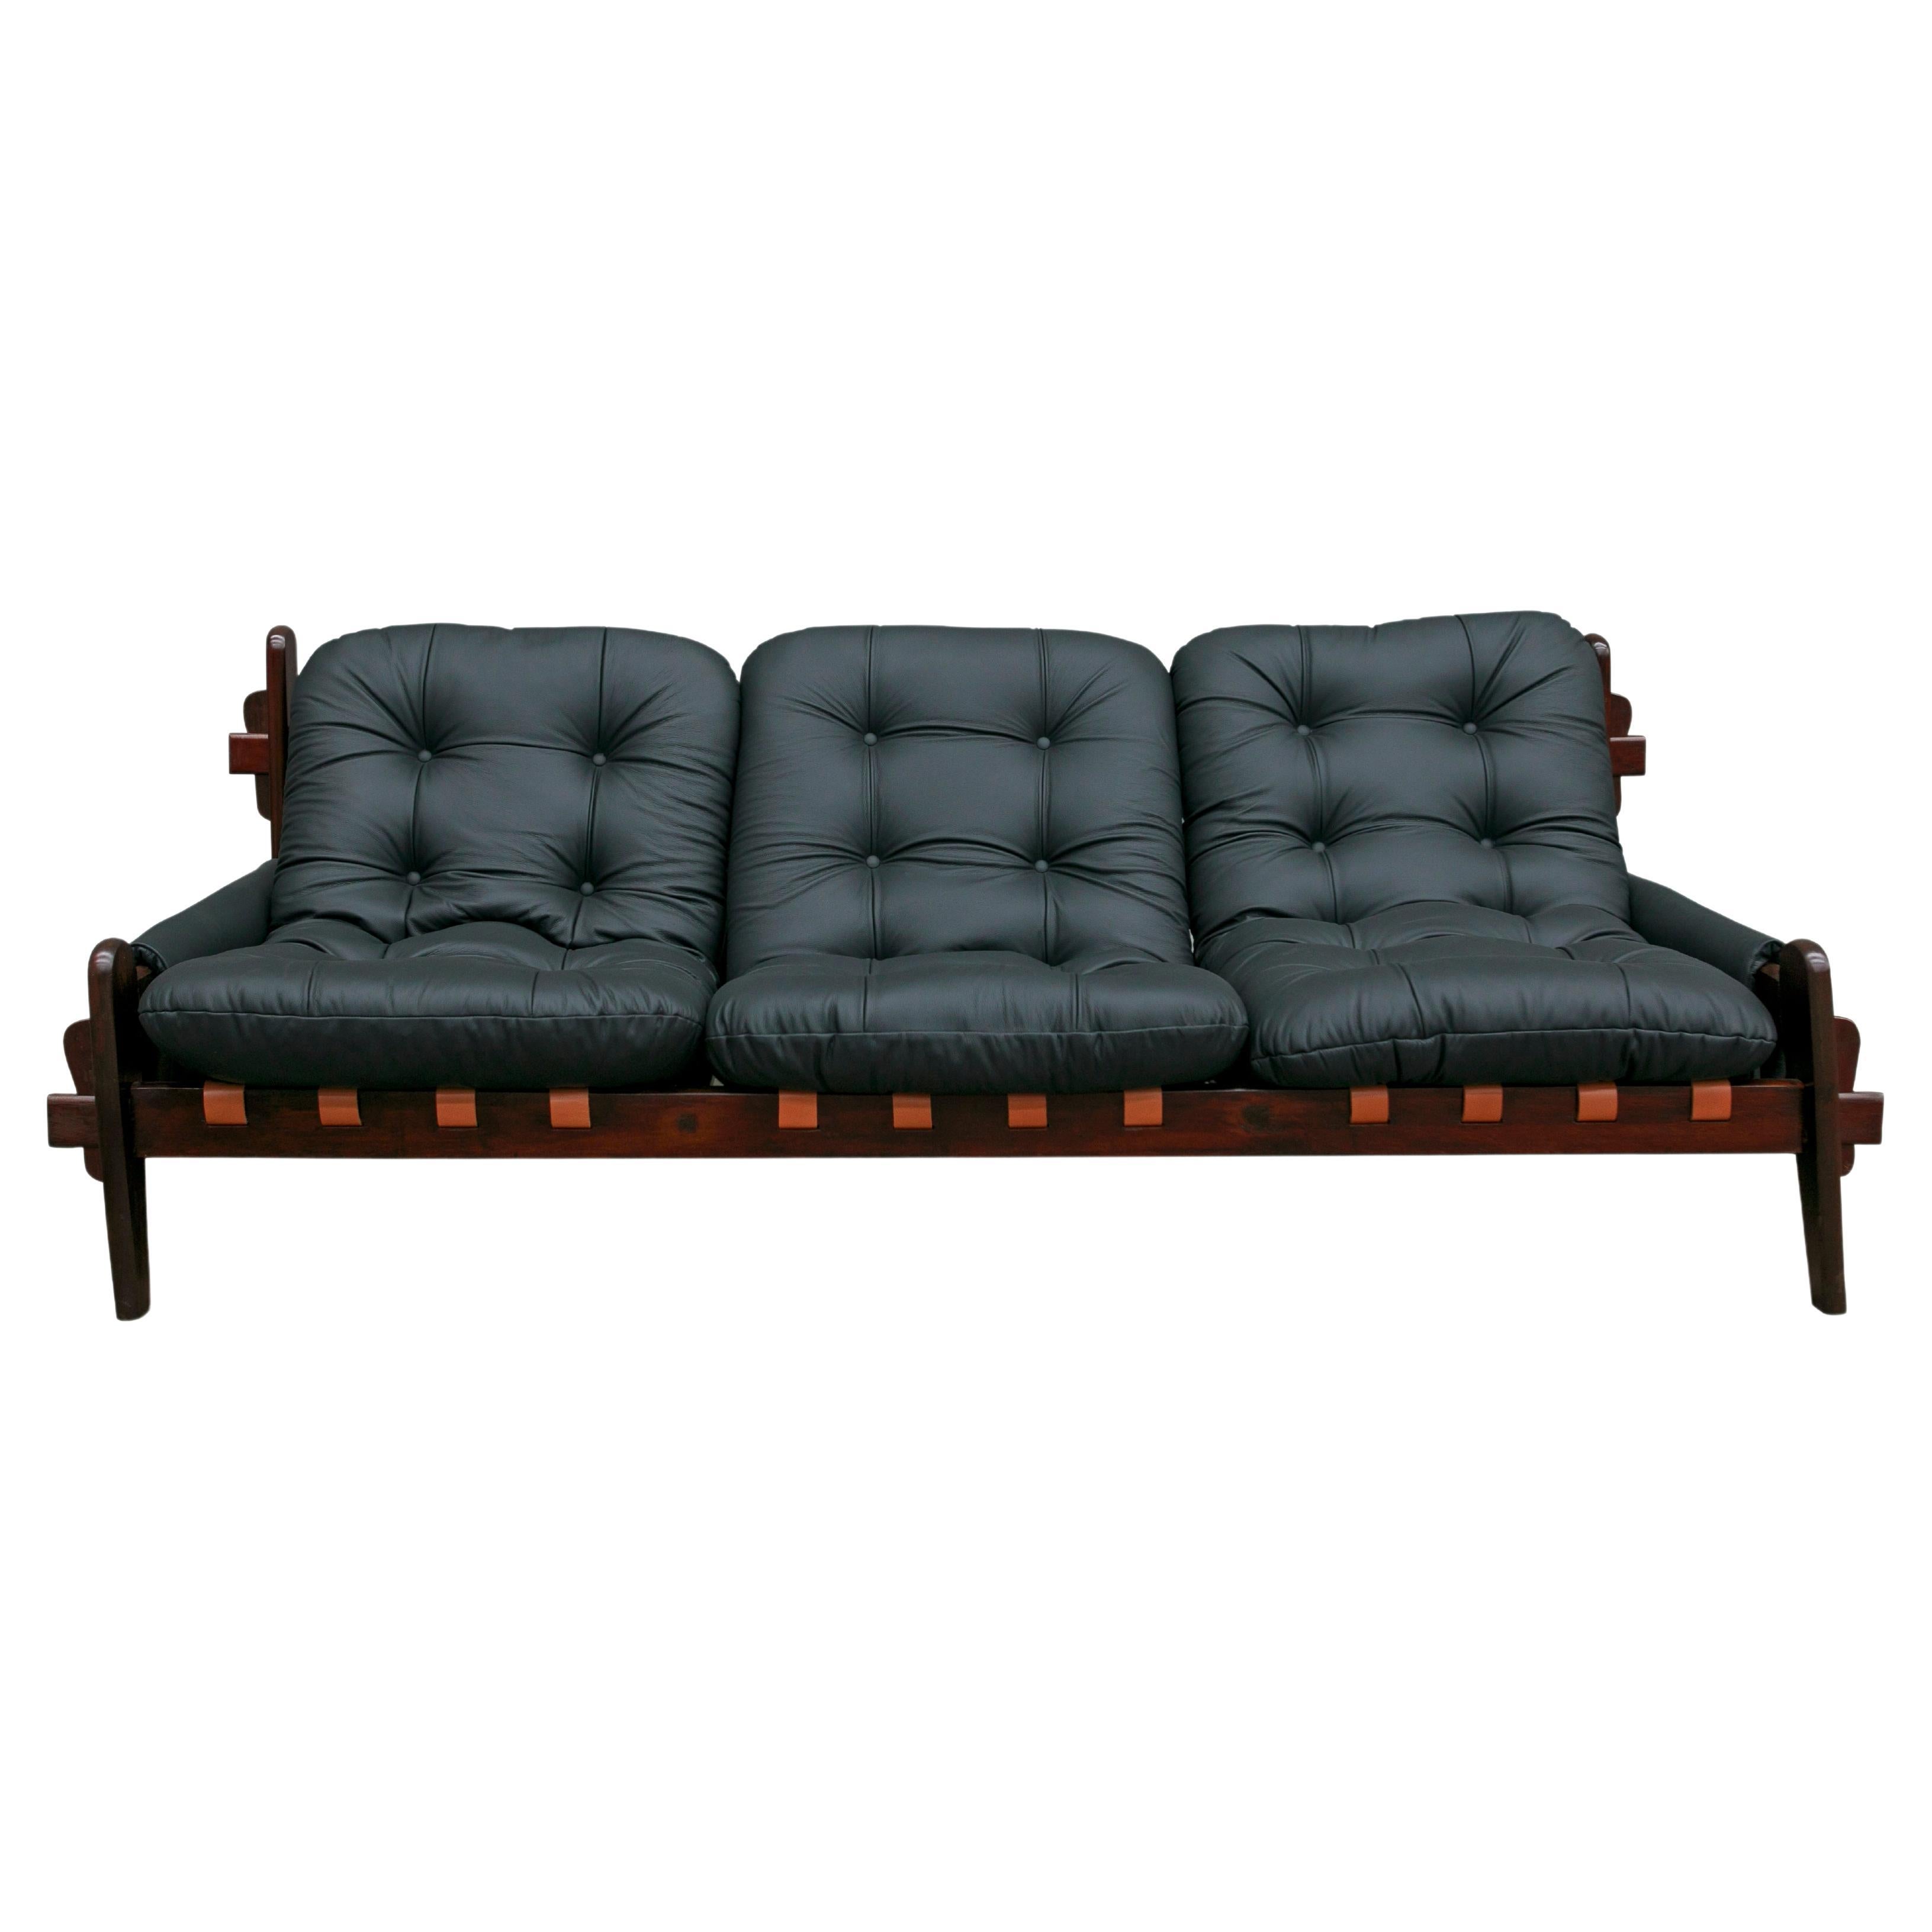 Disponible dès maintenant, ce canapé moderne très brésilien en cuir noir et bois dur conçu par Jean Gillon dans les années 70 est tout simplement spectaculaire !

Ce magnifique canapé trois places, unique en son genre, présente une structure